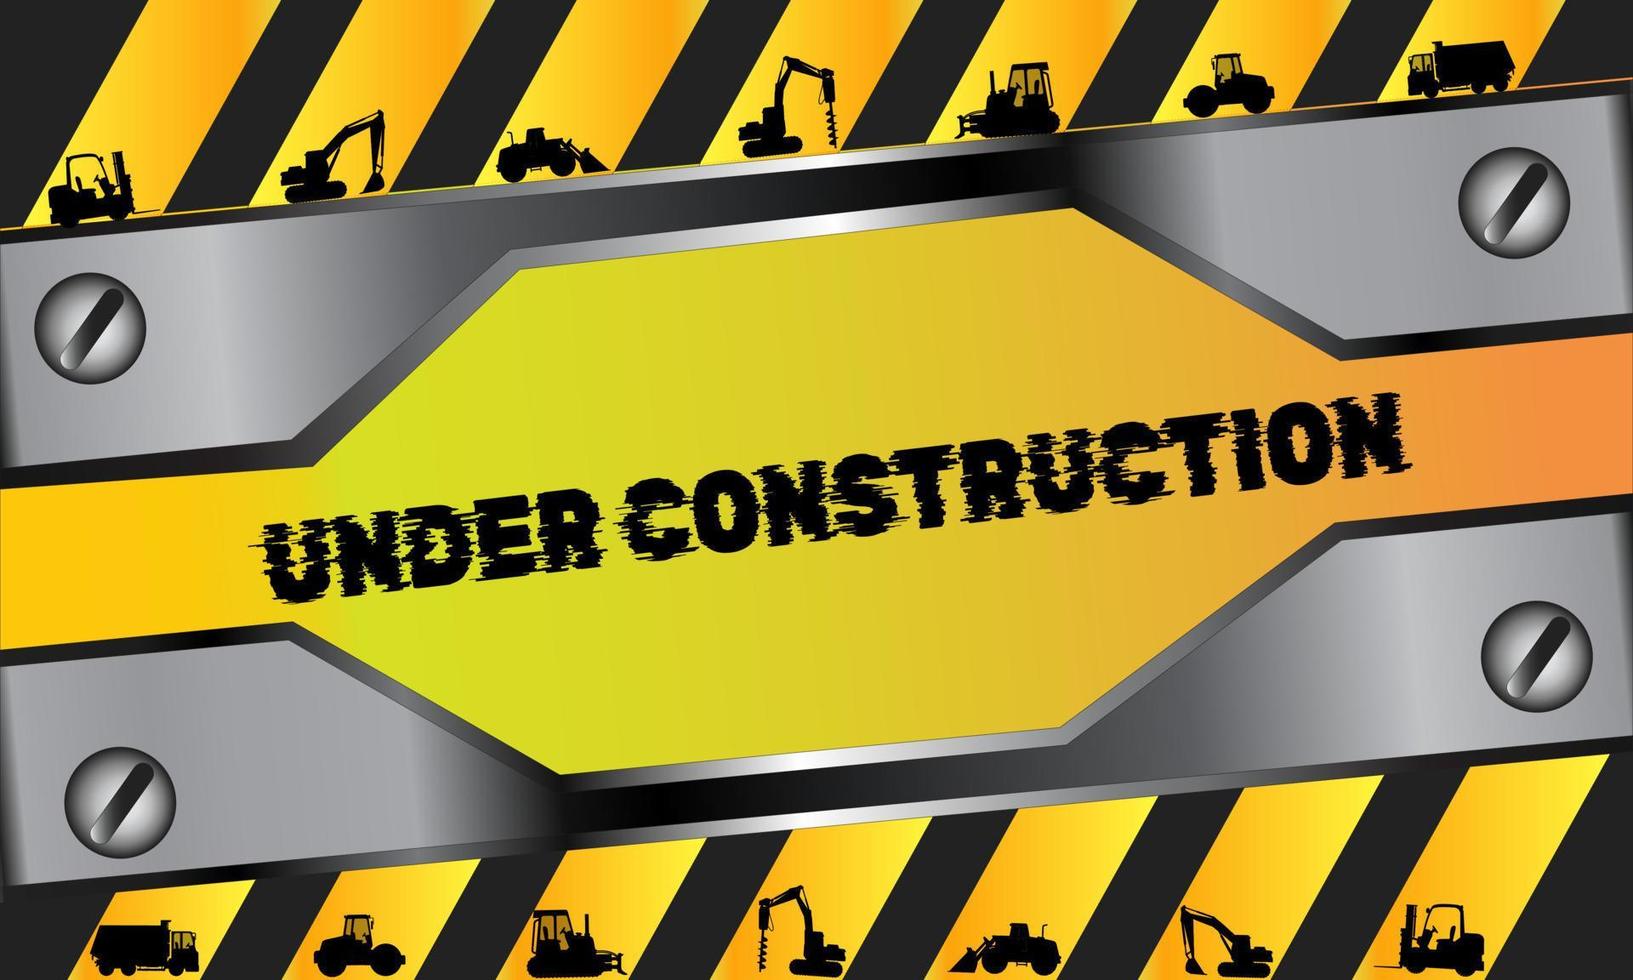 arrière-plan d'avertissement avec illustration de texture métallique, camion, excavatrice et lignes noires jaunes. panneau d'avertissement pour les projets en construction vecteur